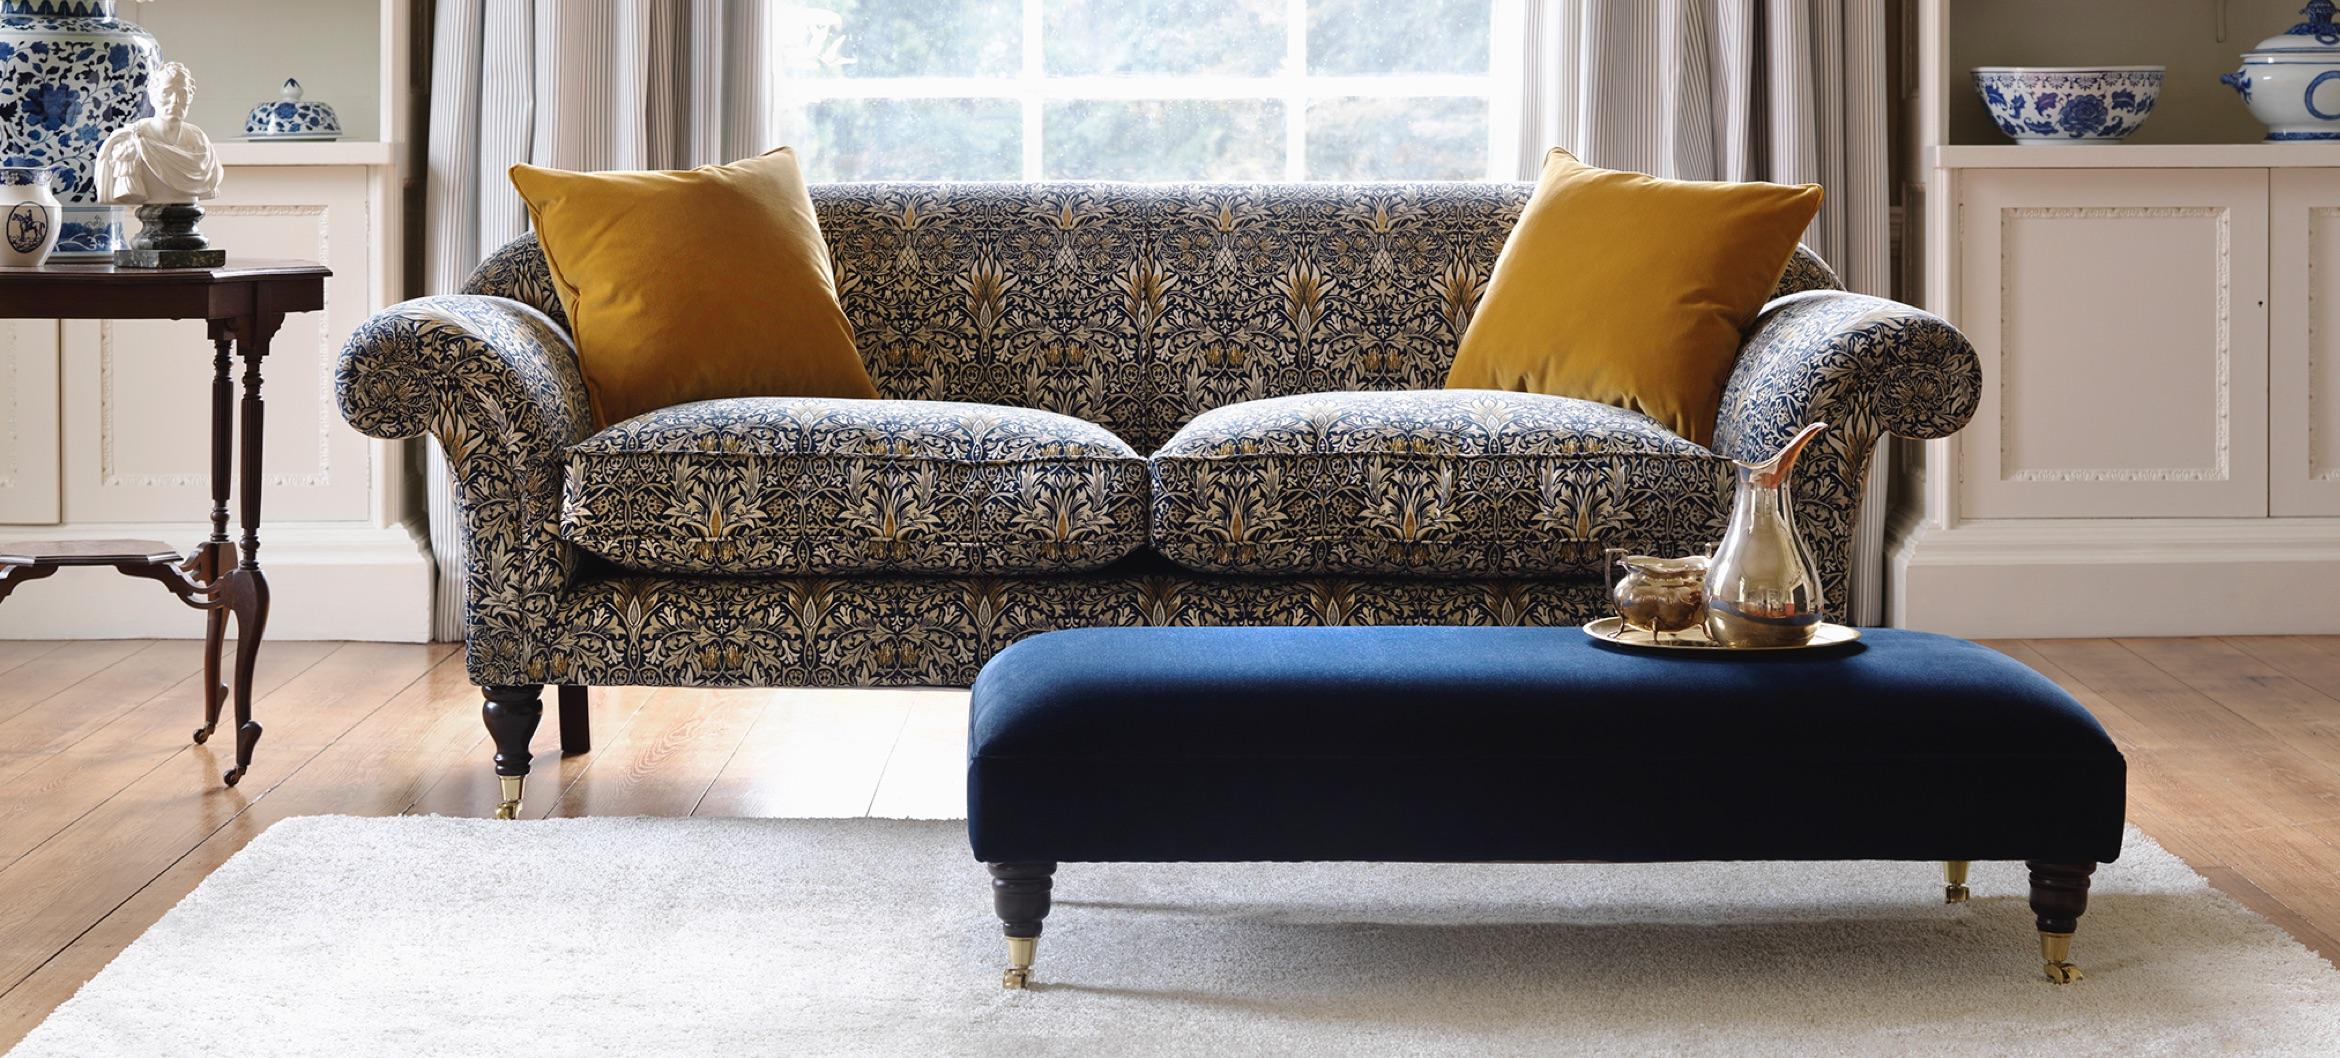 british made sofa beds